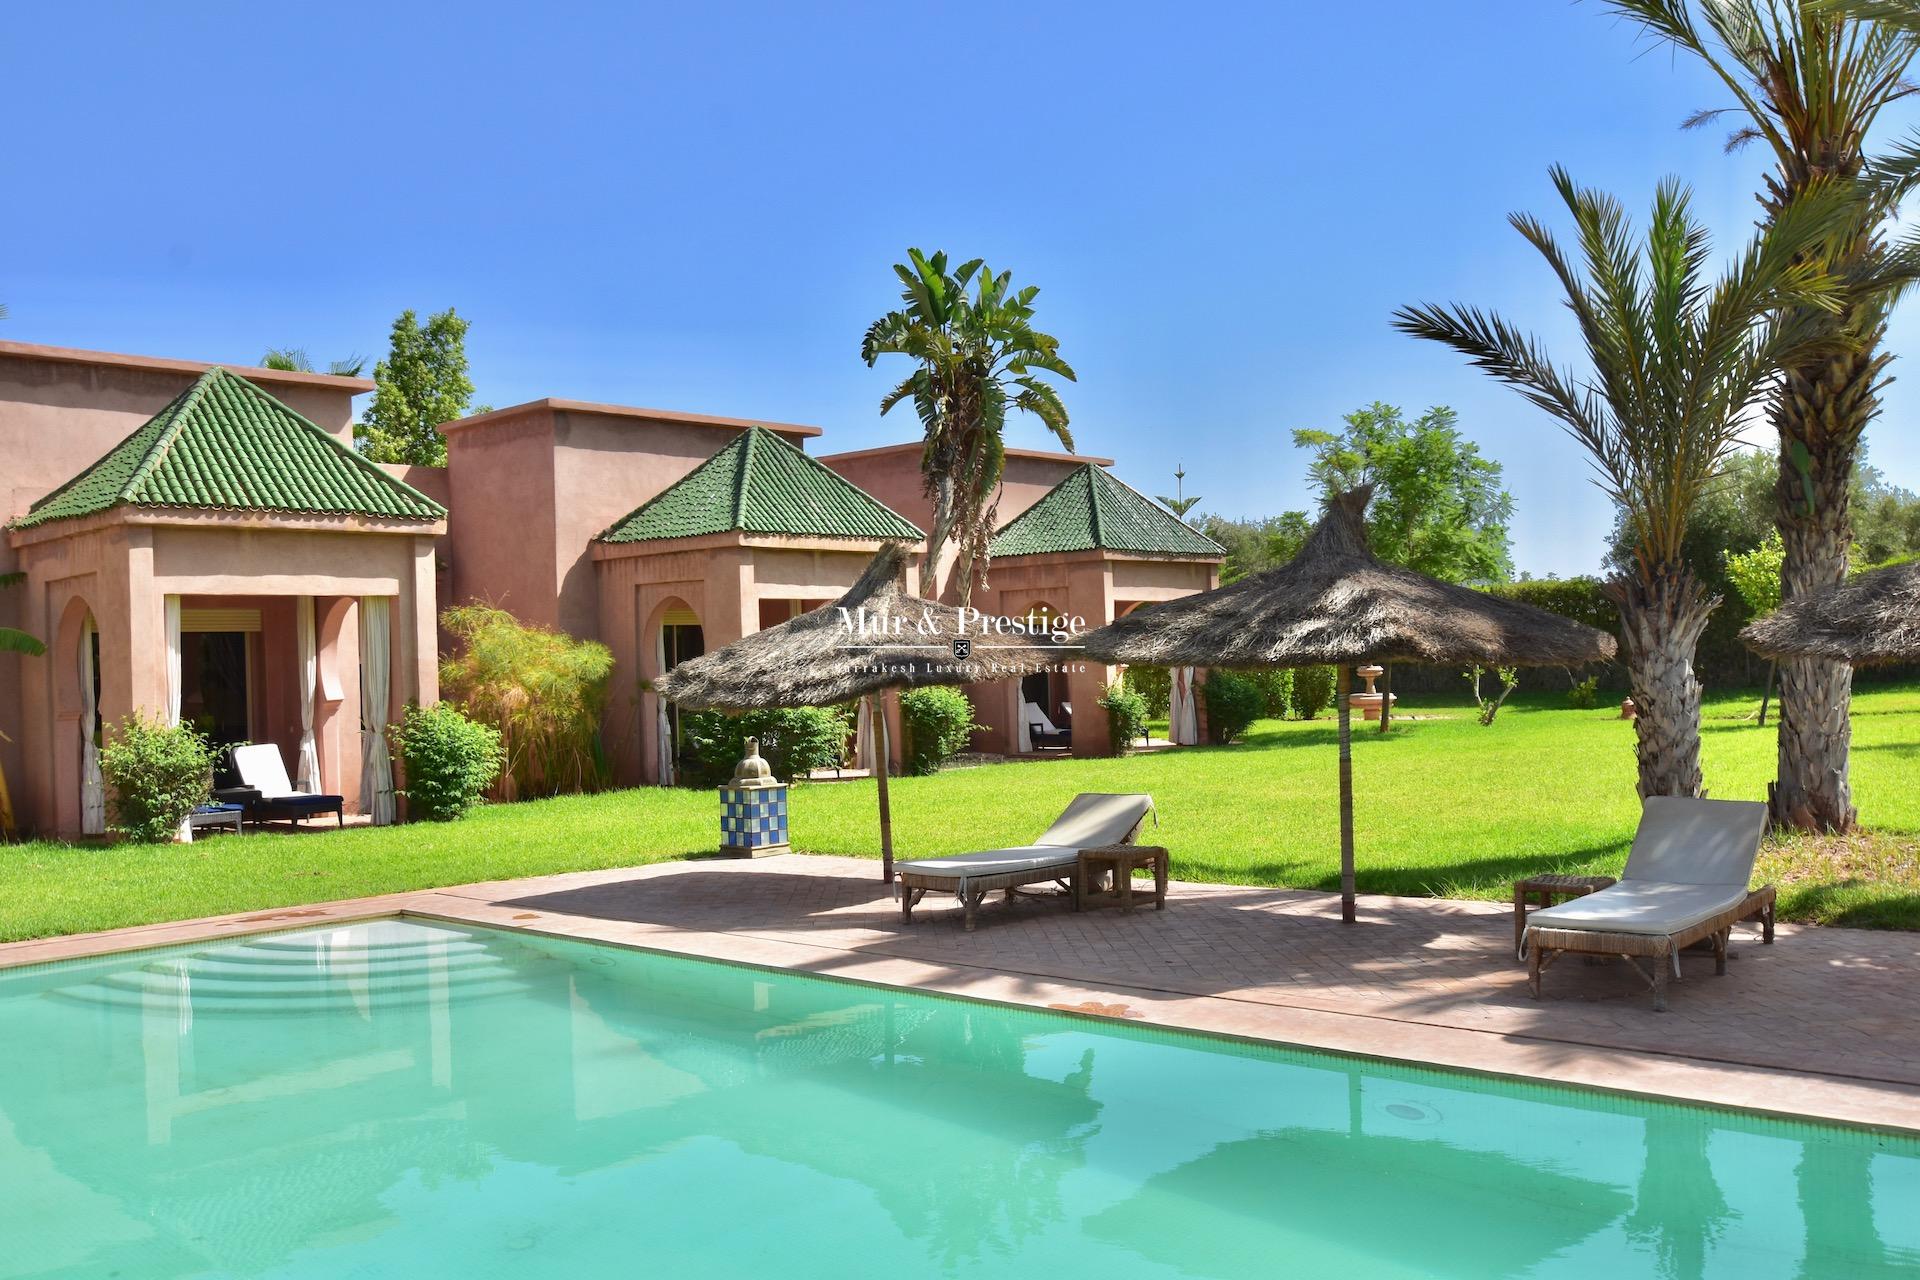 Location Séjour Vacances à Marrakech - Agence Immobilière